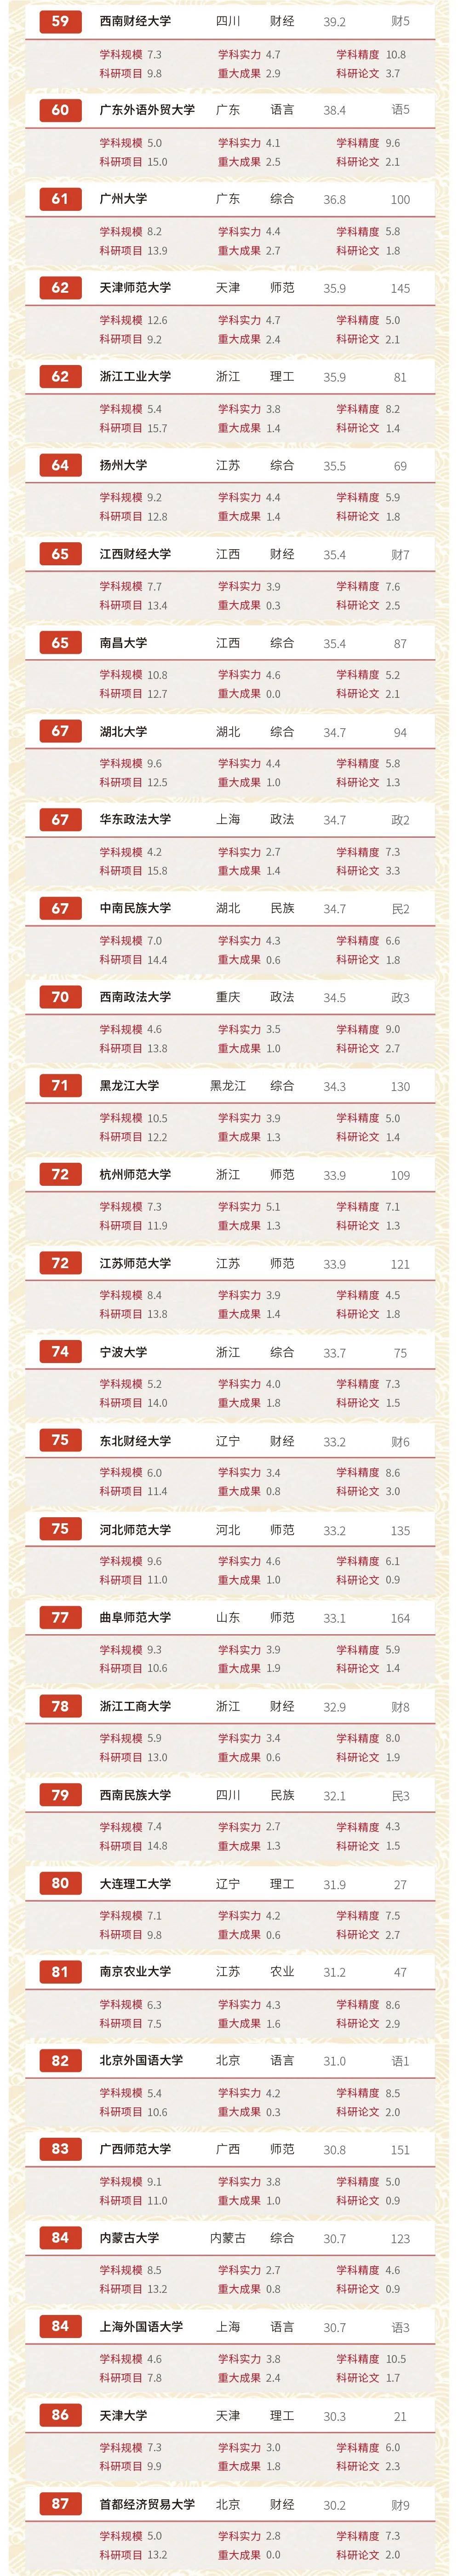 2020动漫学校排名_重庆高校TOP10,2020重庆“最好大学”排名整理